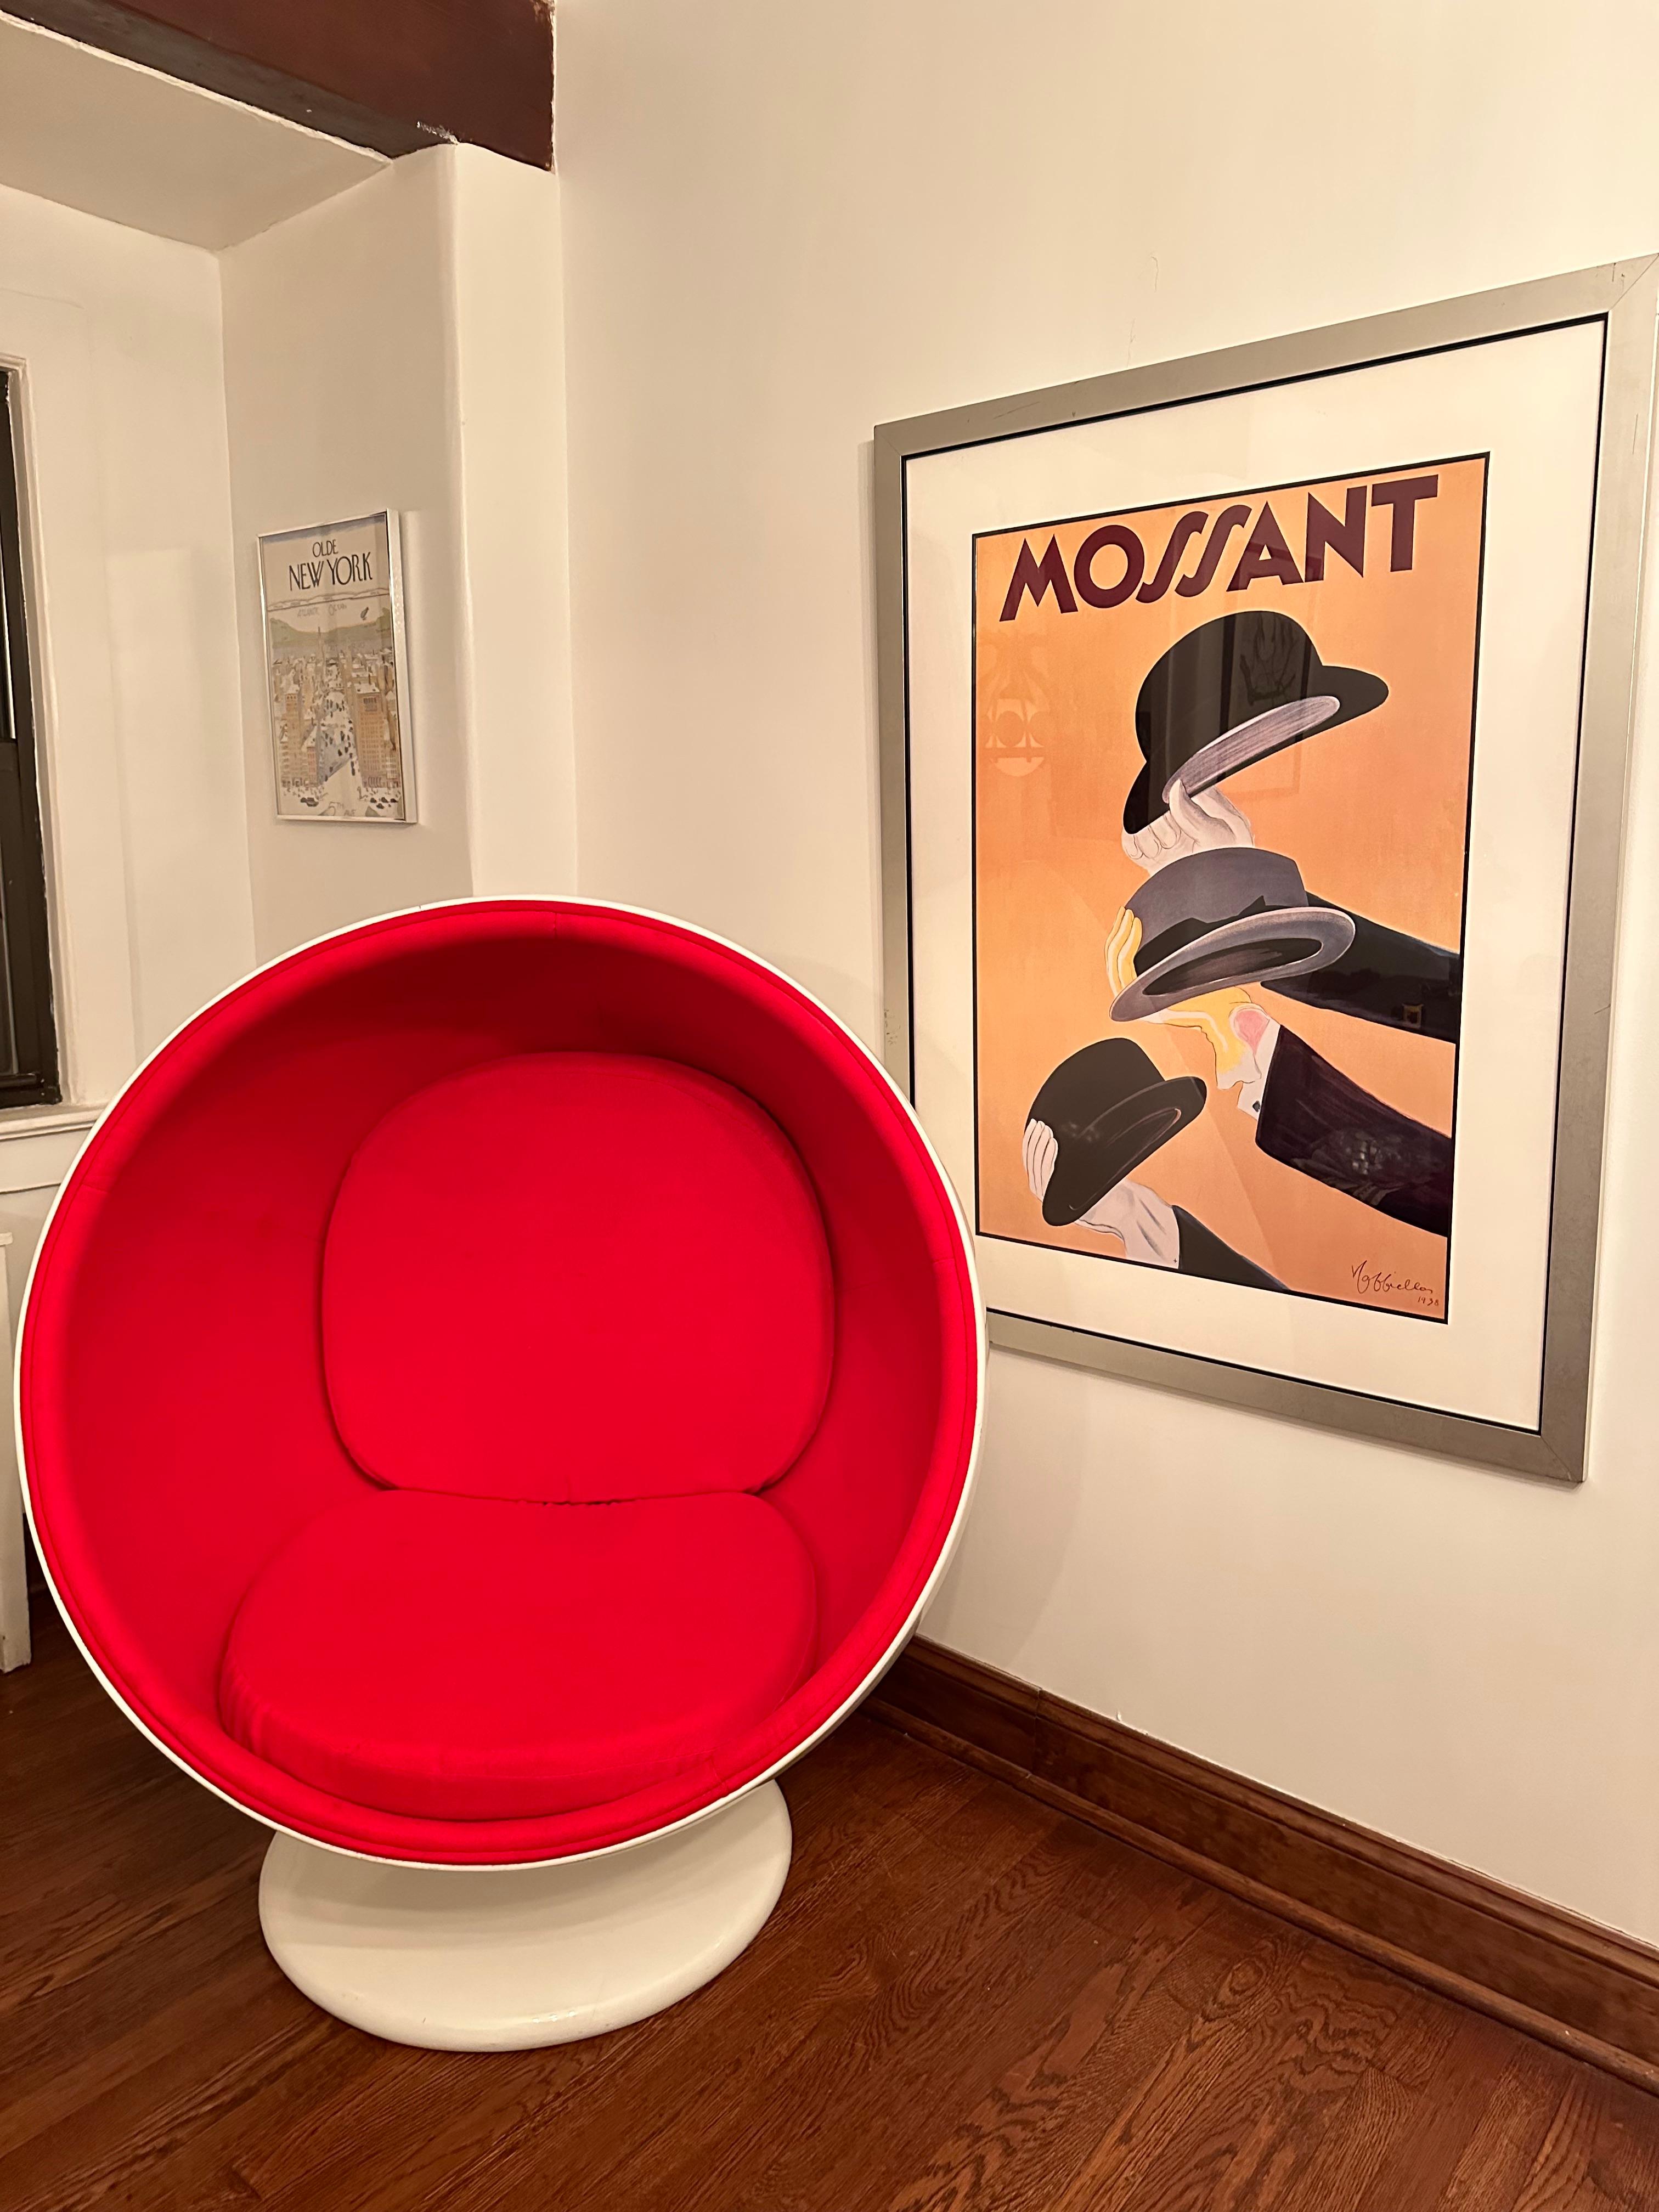 Mossant 3 Hüte ist ein atemberaubendes Kunstwerk, das die Essenz des klassischen Stils und der Raffinesse einfängt. Das Poster zeigt drei elegant gearbeitete Hüte, jeder mit seinem eigenen Design und seiner eigenen Farbe, die sorgfältig in einer